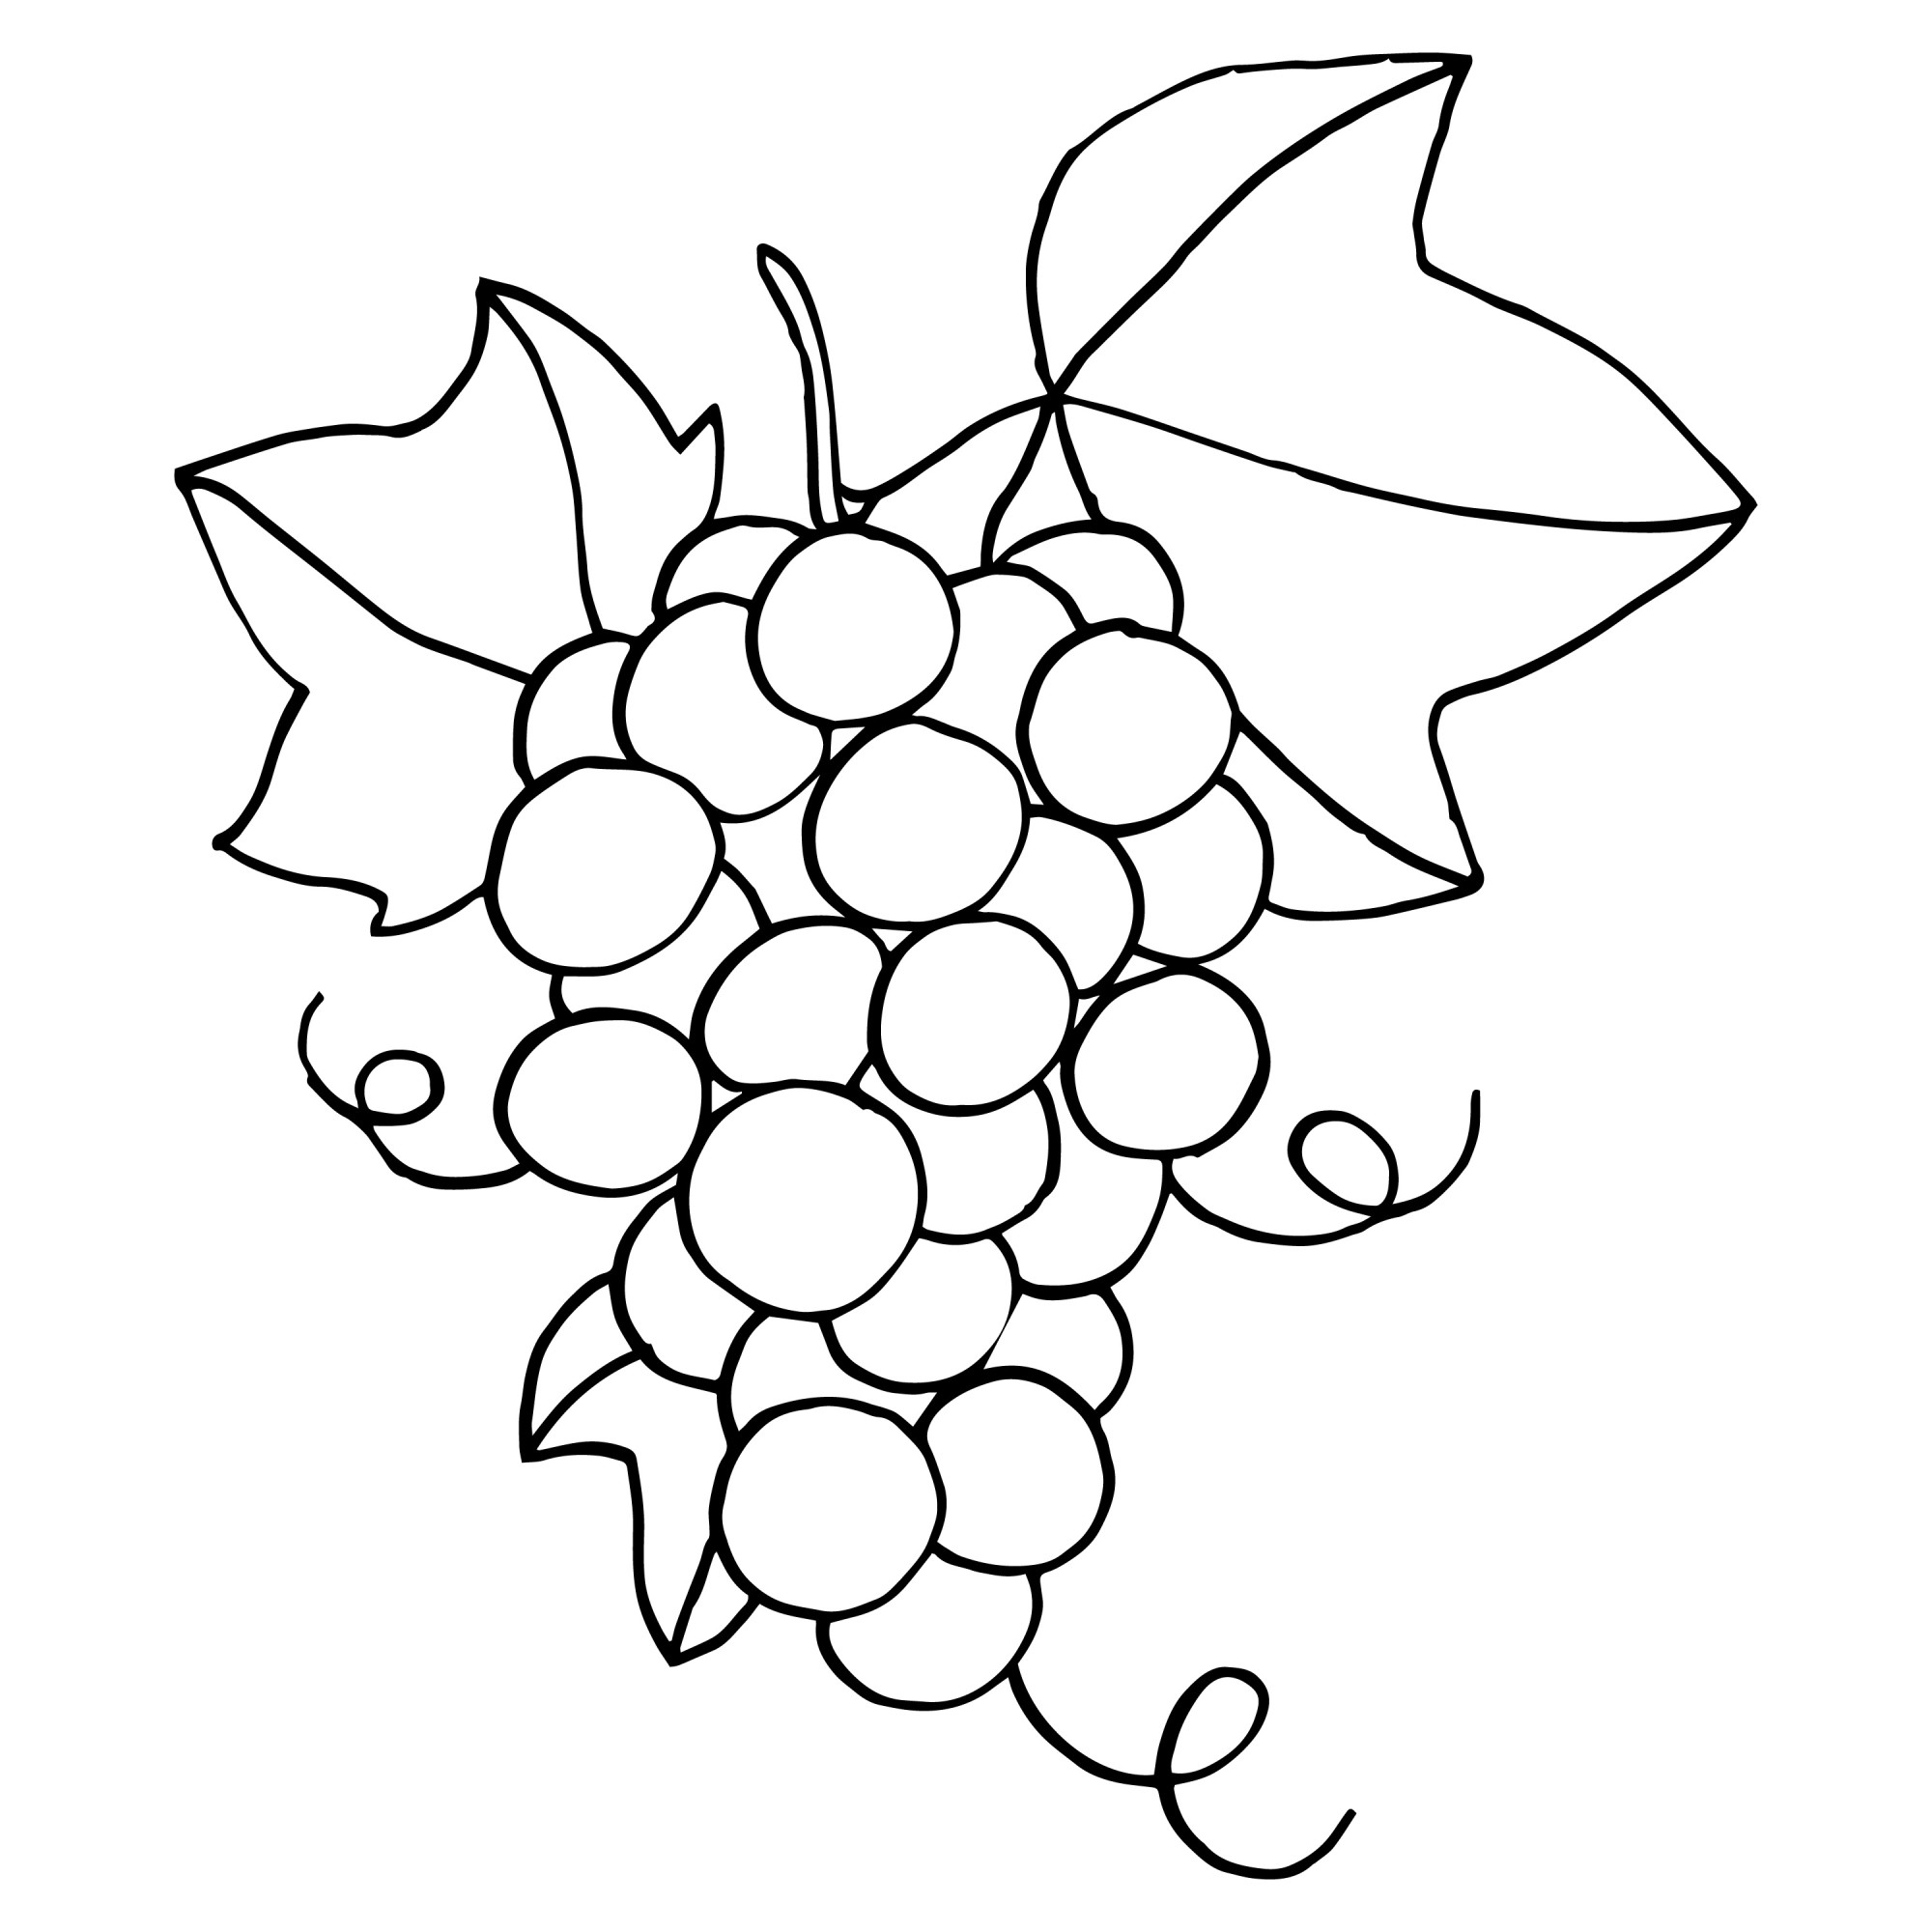 Раскраска для детей: виноградный лист и гроздь сочного винограда